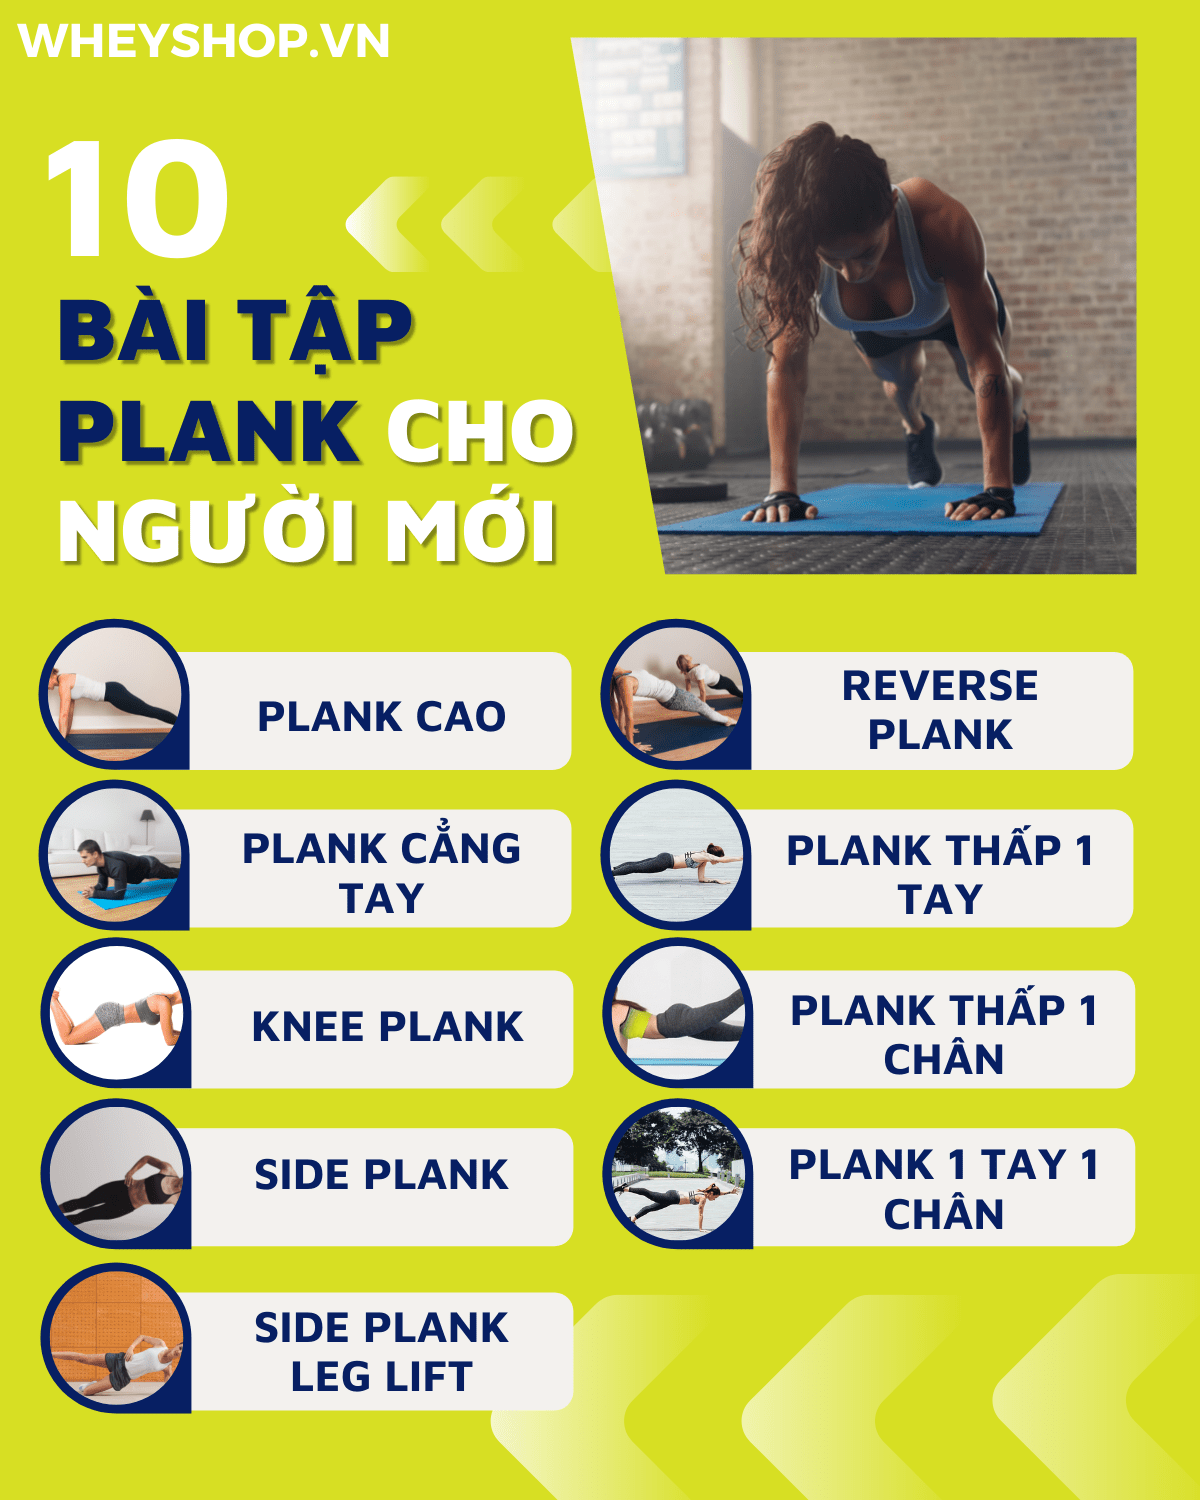 Plank là gì? Những người mới bắt đầu thì nên tập những bài tập plank như thế nào?